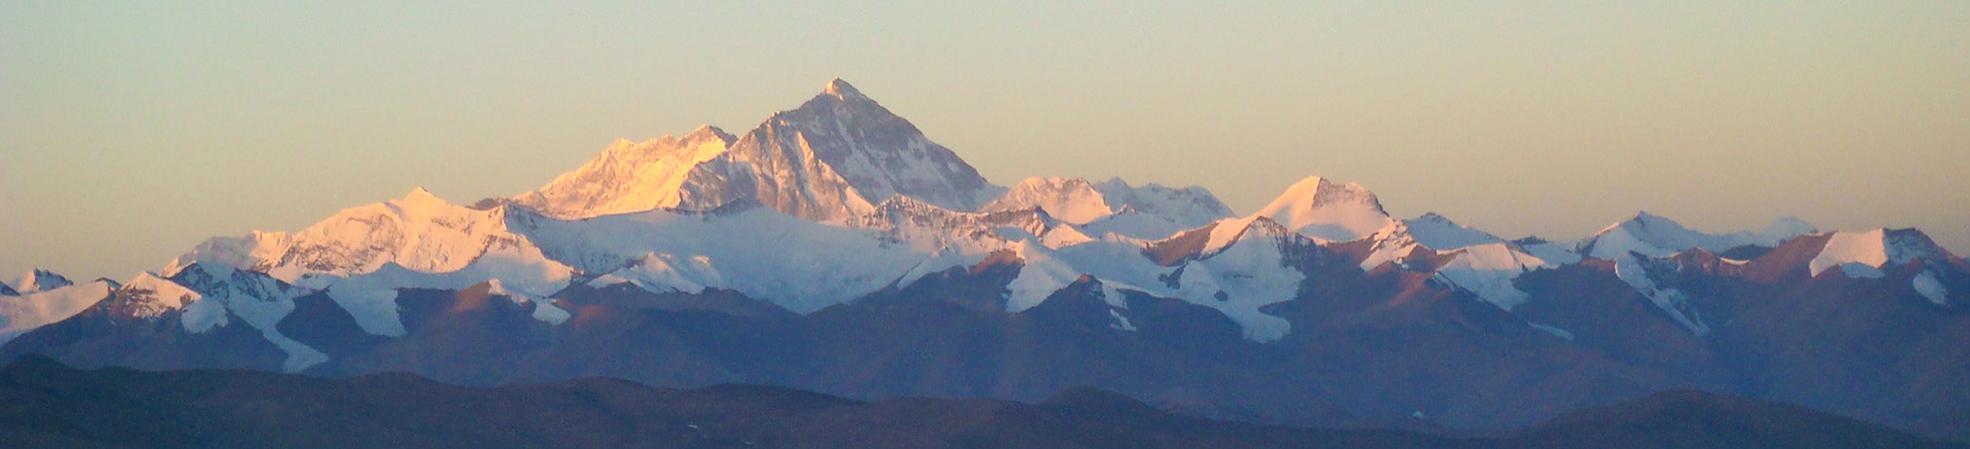 Tibet snow mountains